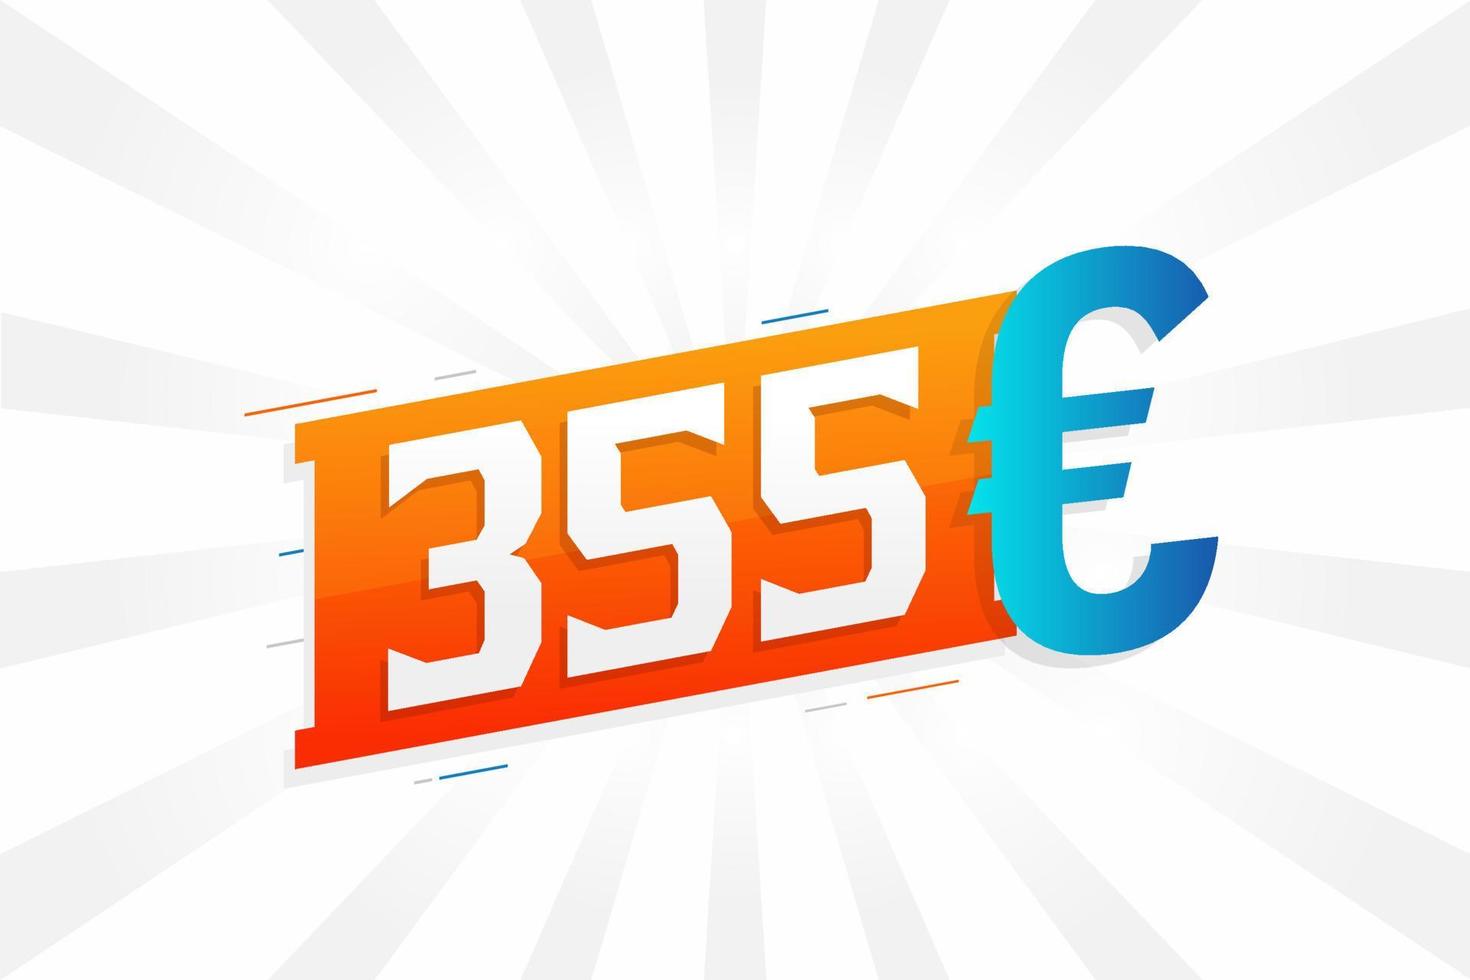 Símbolo de texto de vetor de moeda de 355 euros. vetor de estoque de dinheiro da união europeia de 355 euros